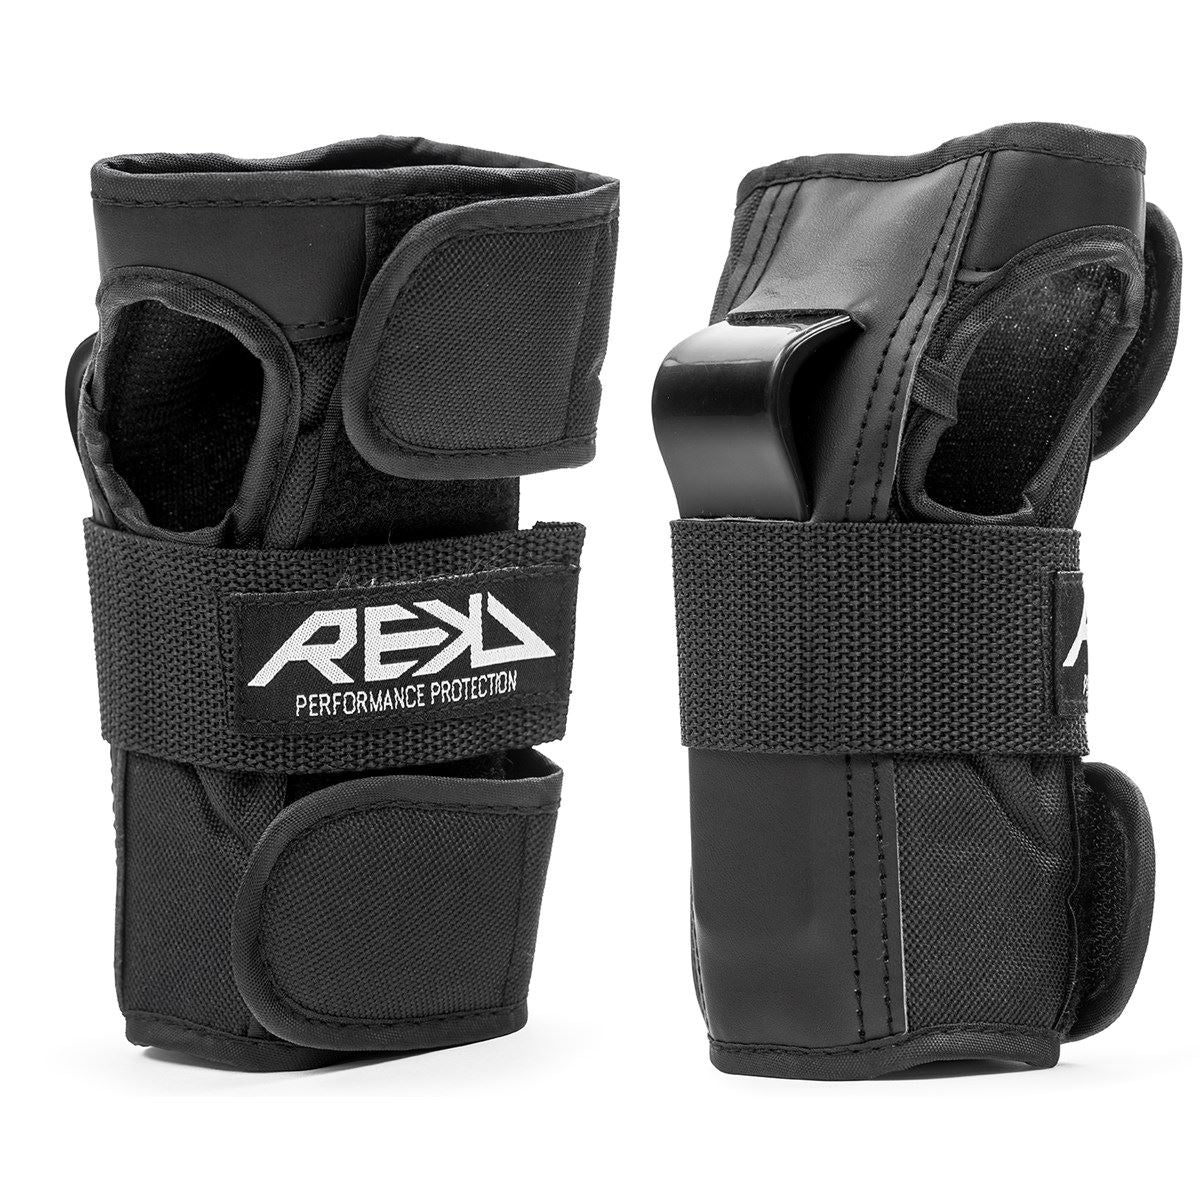 Kit de protection roller complet genoulliere coudiere et protege poignets  pour enfant